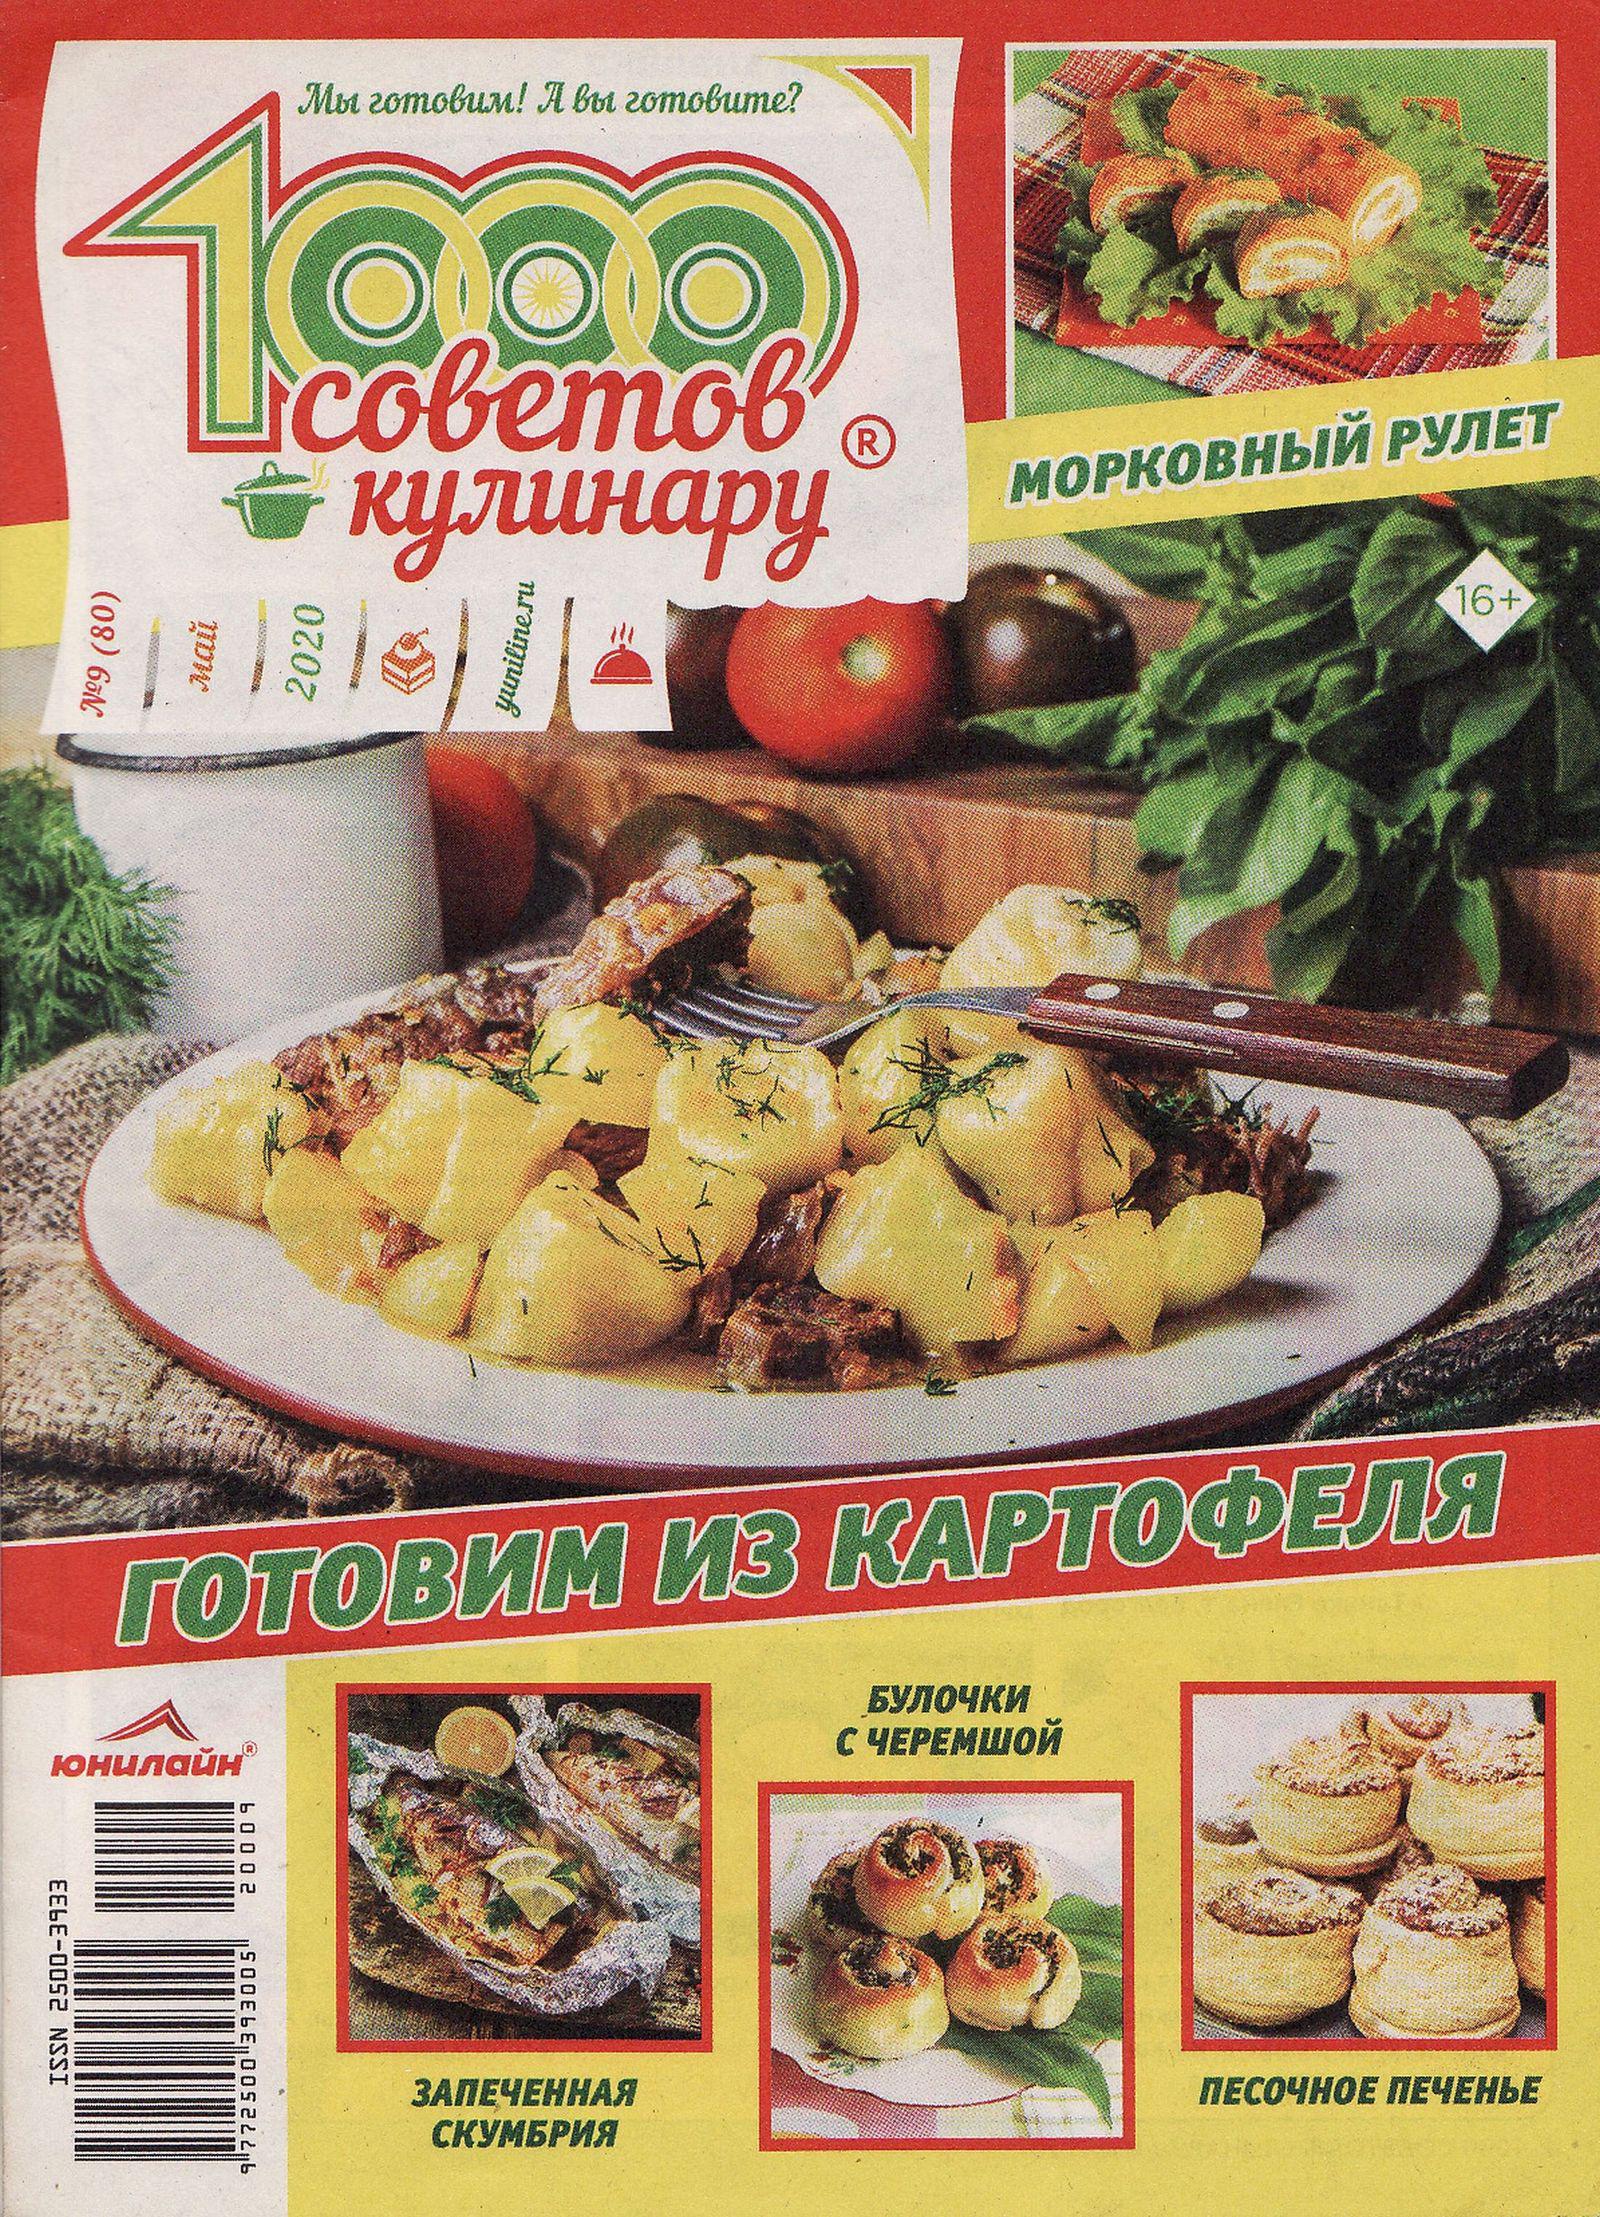 1000 Советов кулинару